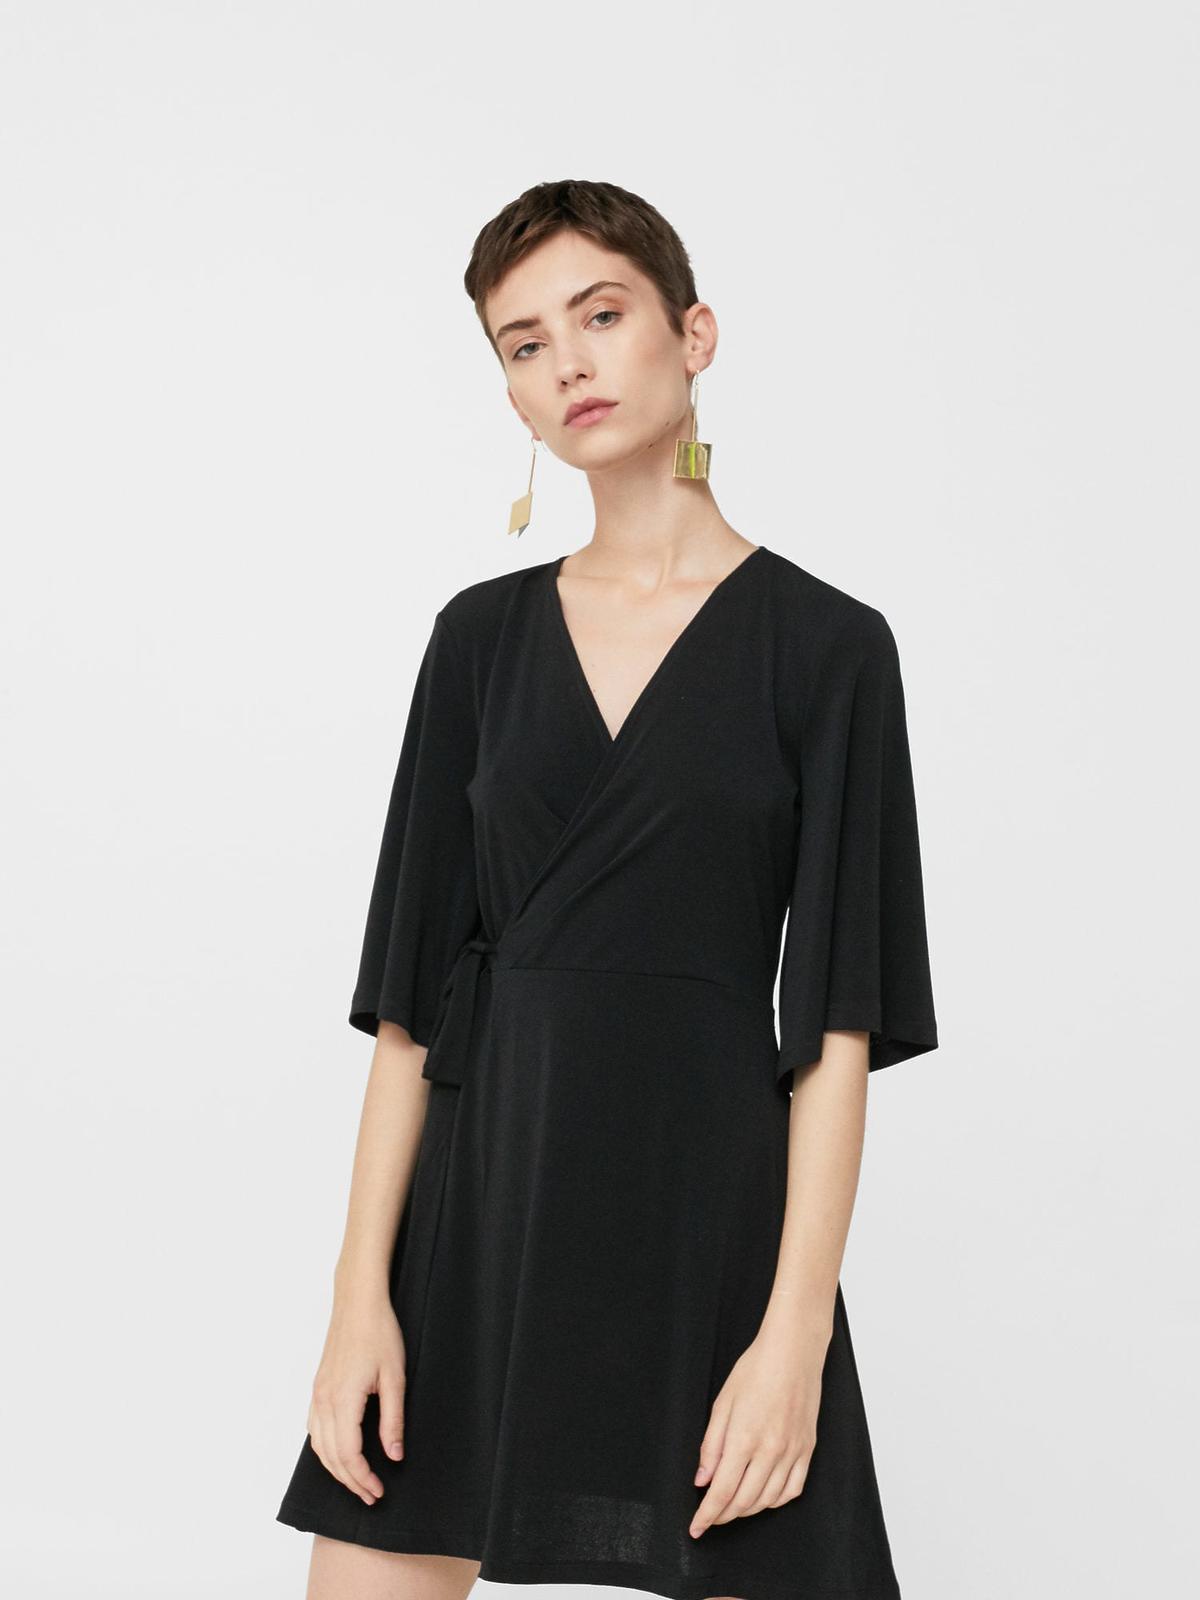 Czarna sukienka - 49,90 zł (było 89,90 zł)